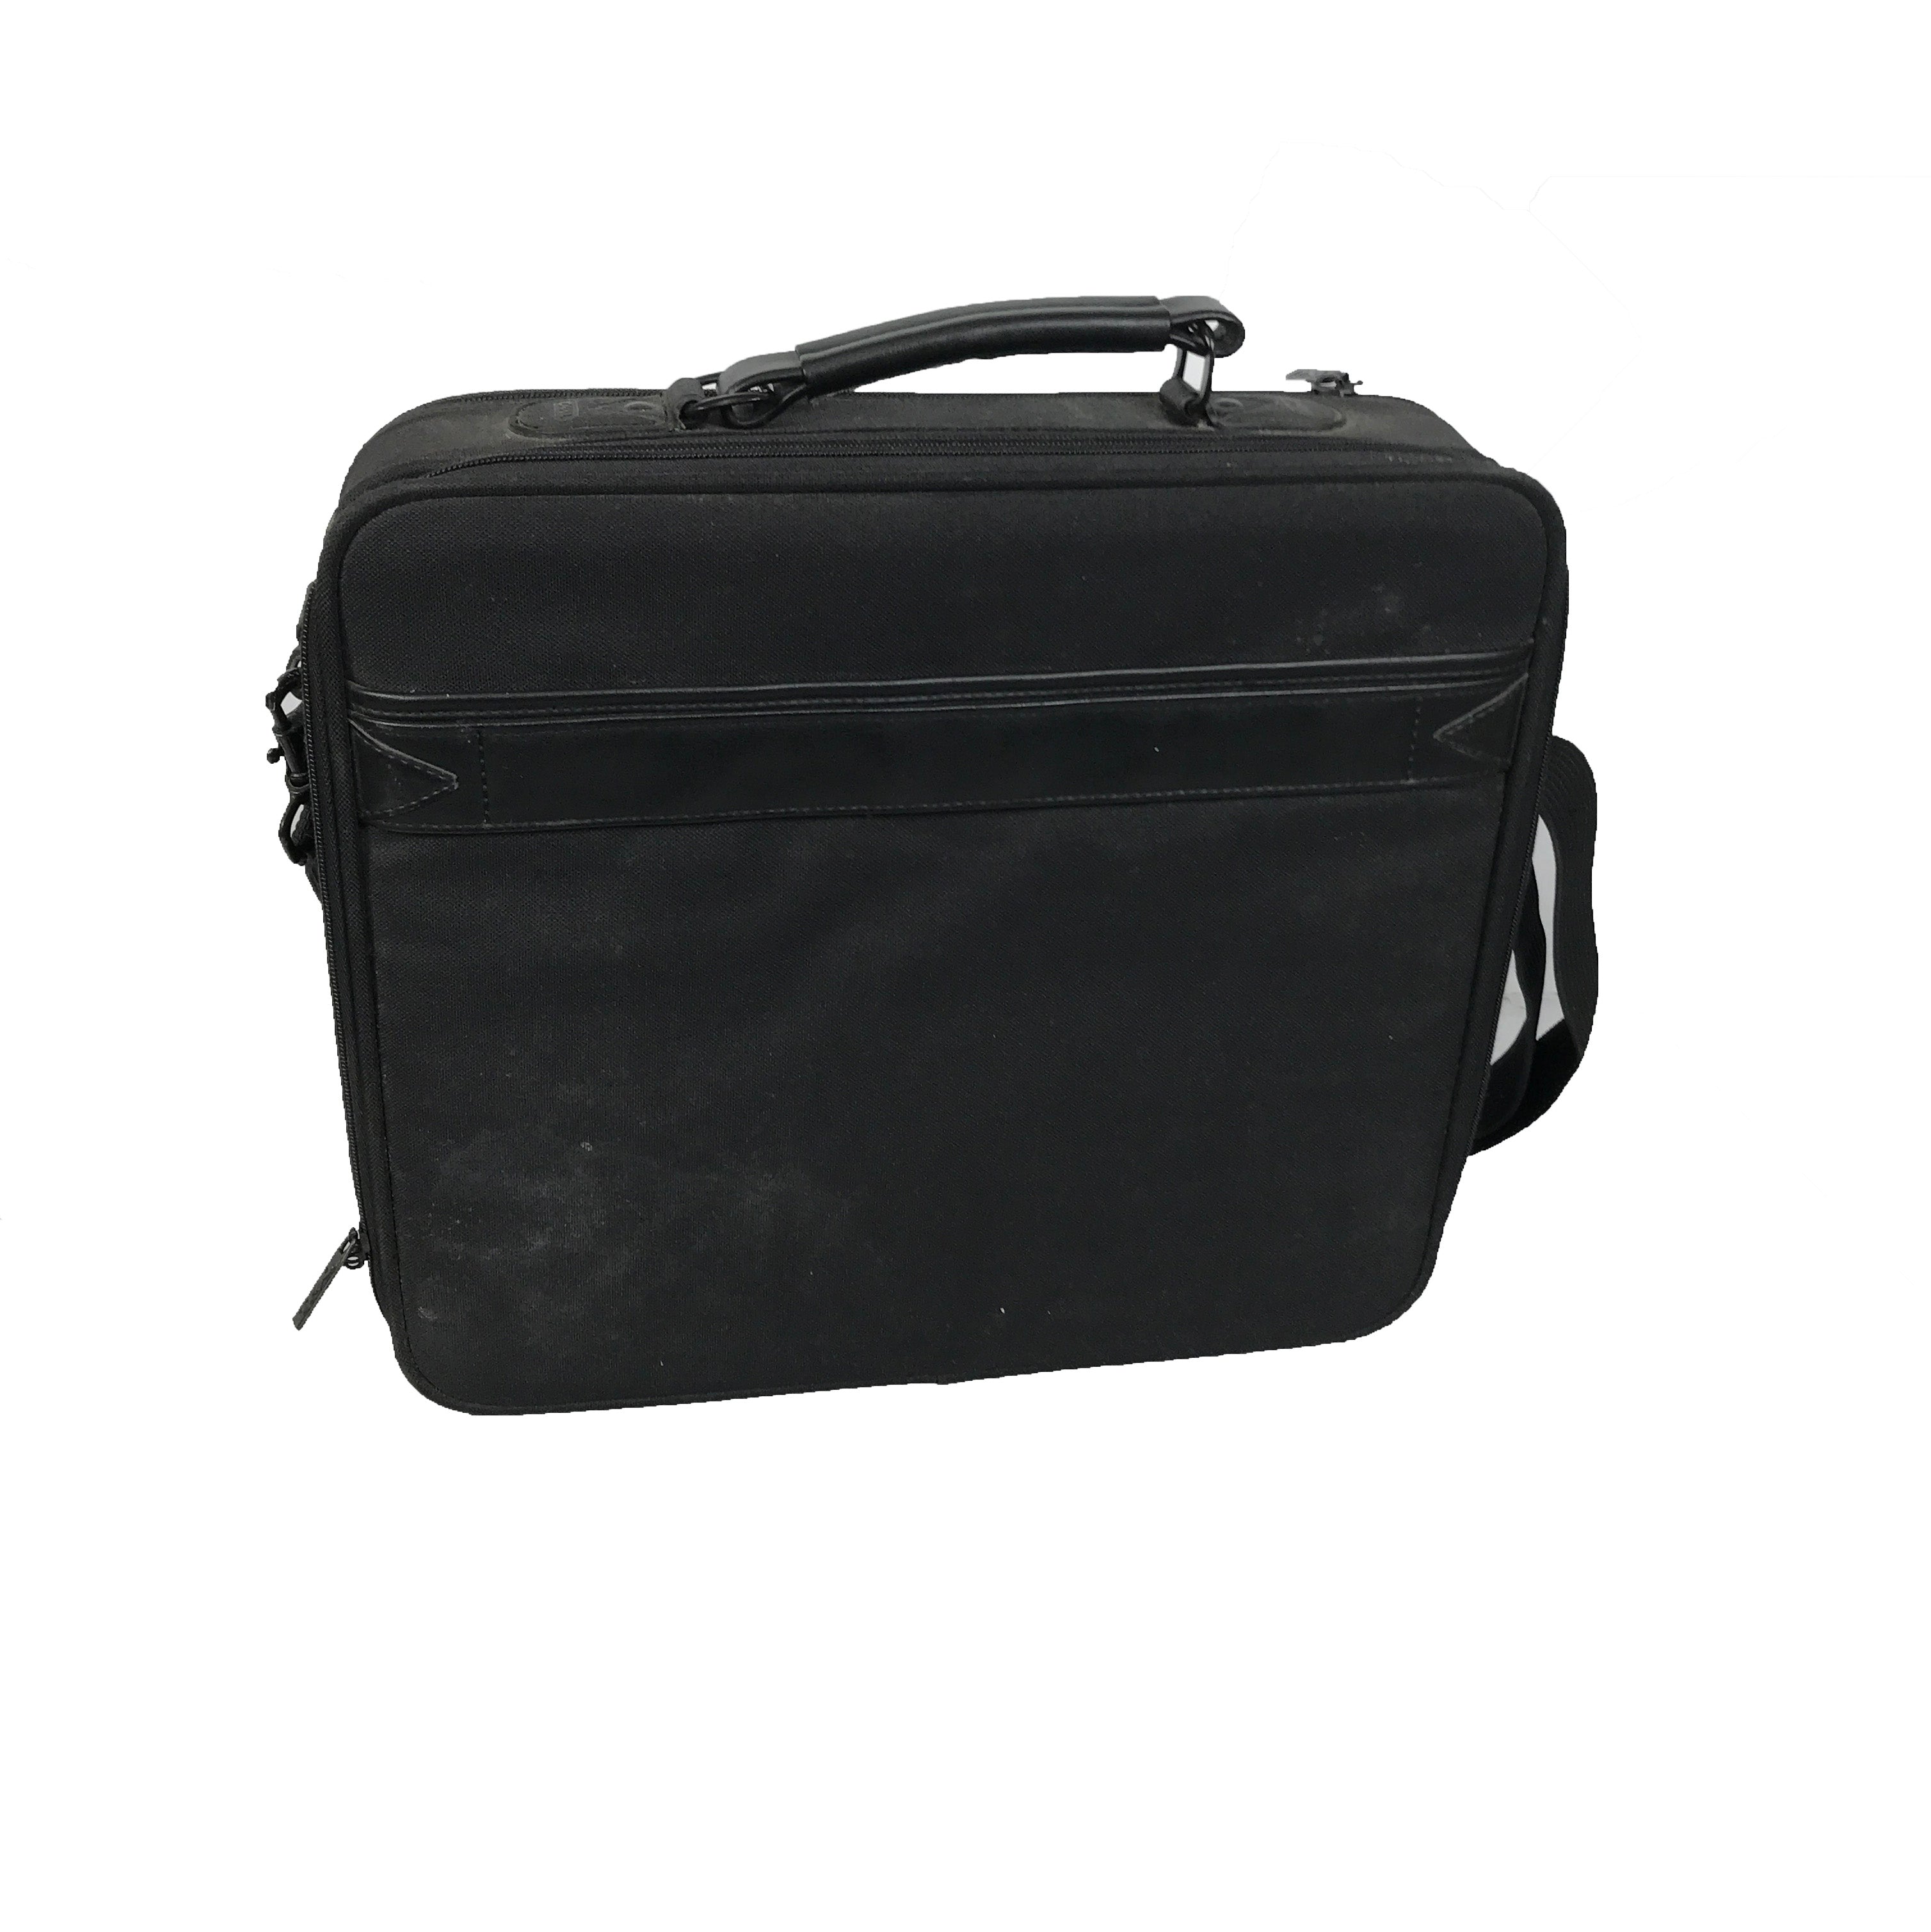 Dell Black Laptop Bag